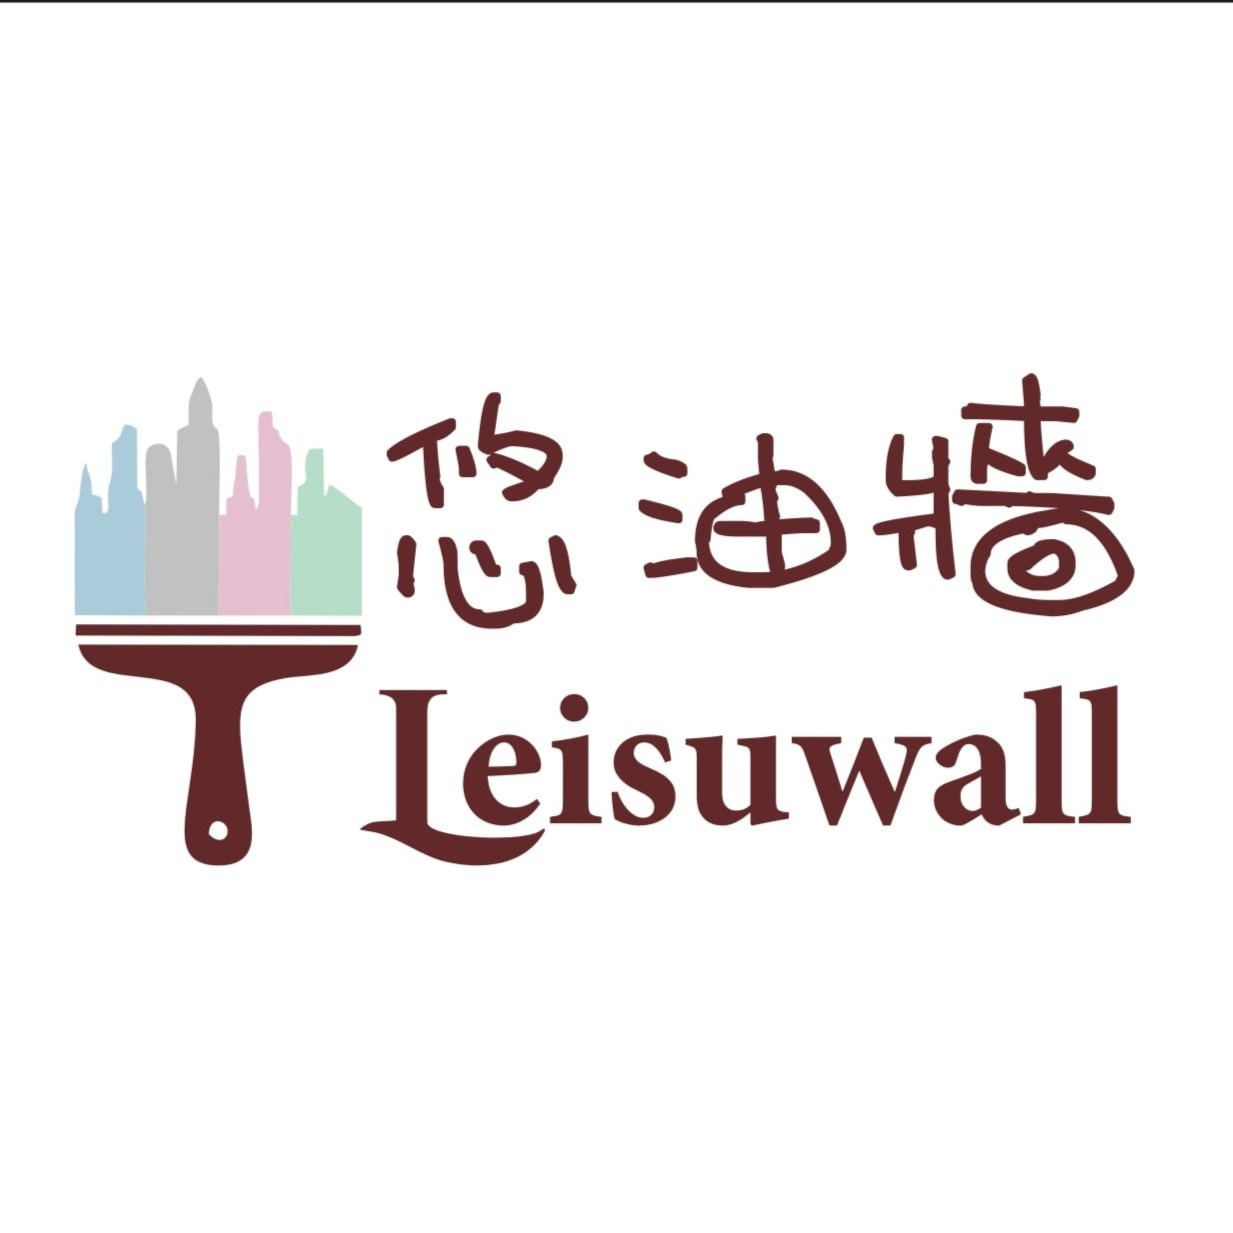 Leisuwall